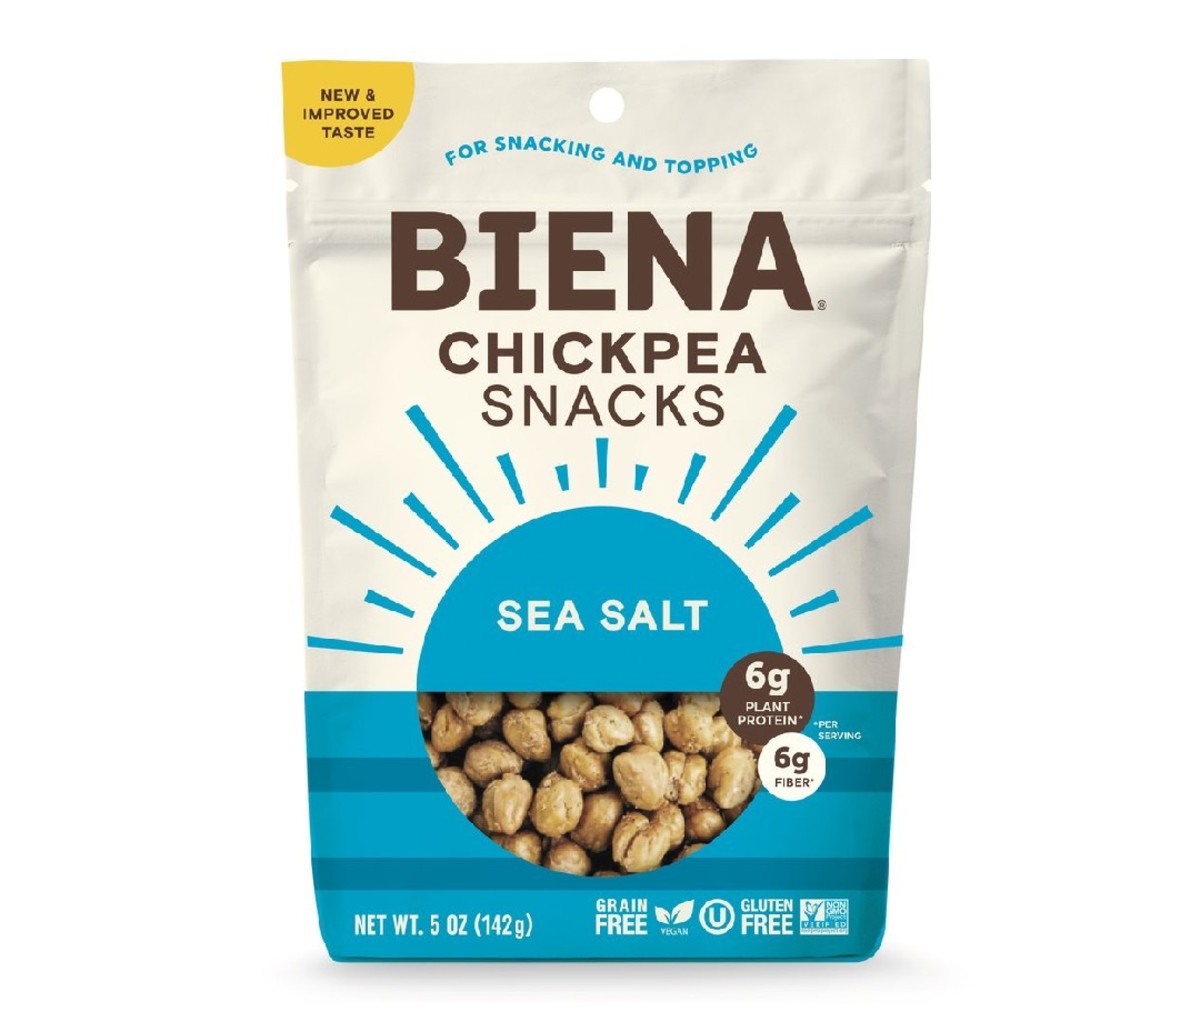 Biena Chickpea Snacks Sea Salt